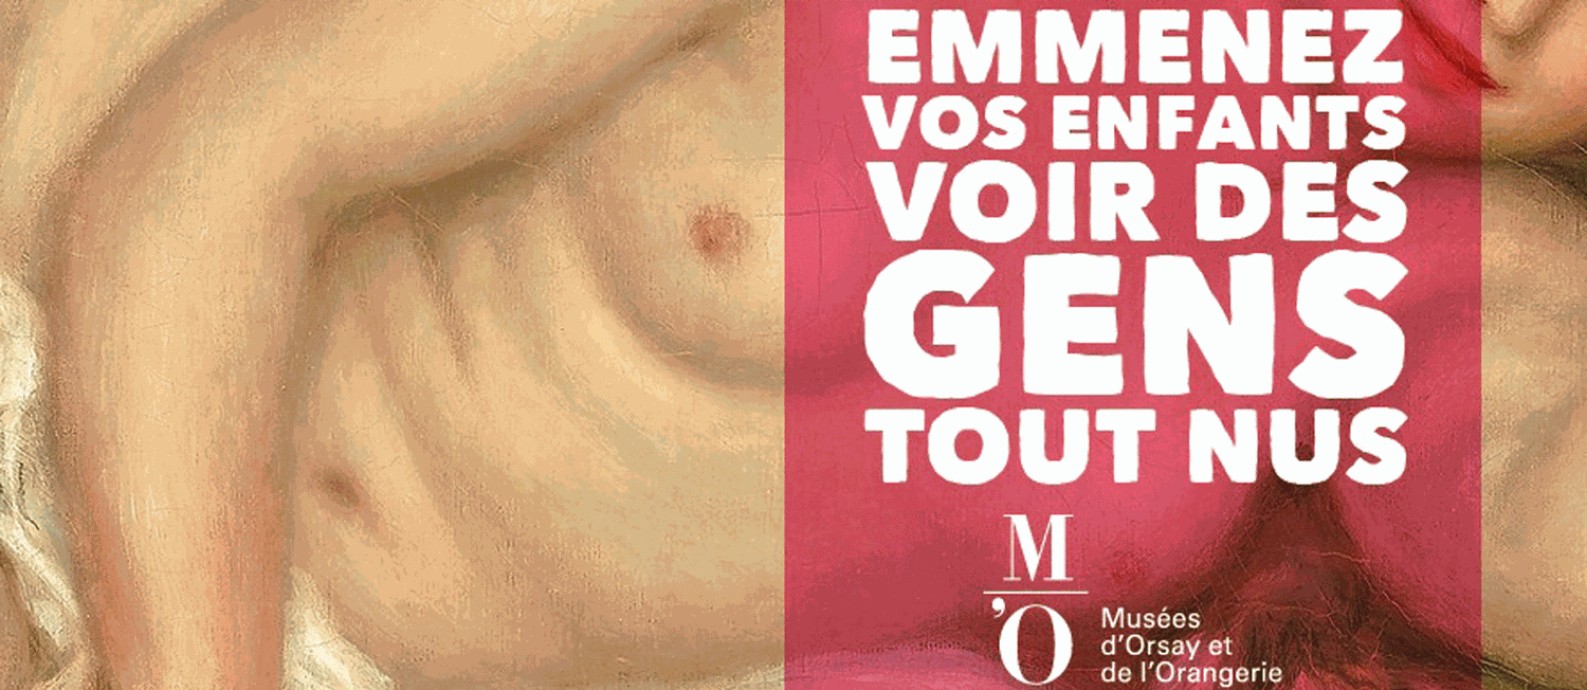 Campanha do Museu D'Orsay: 'Traga seus filhos para ver gente nua' Foto: Reprodução